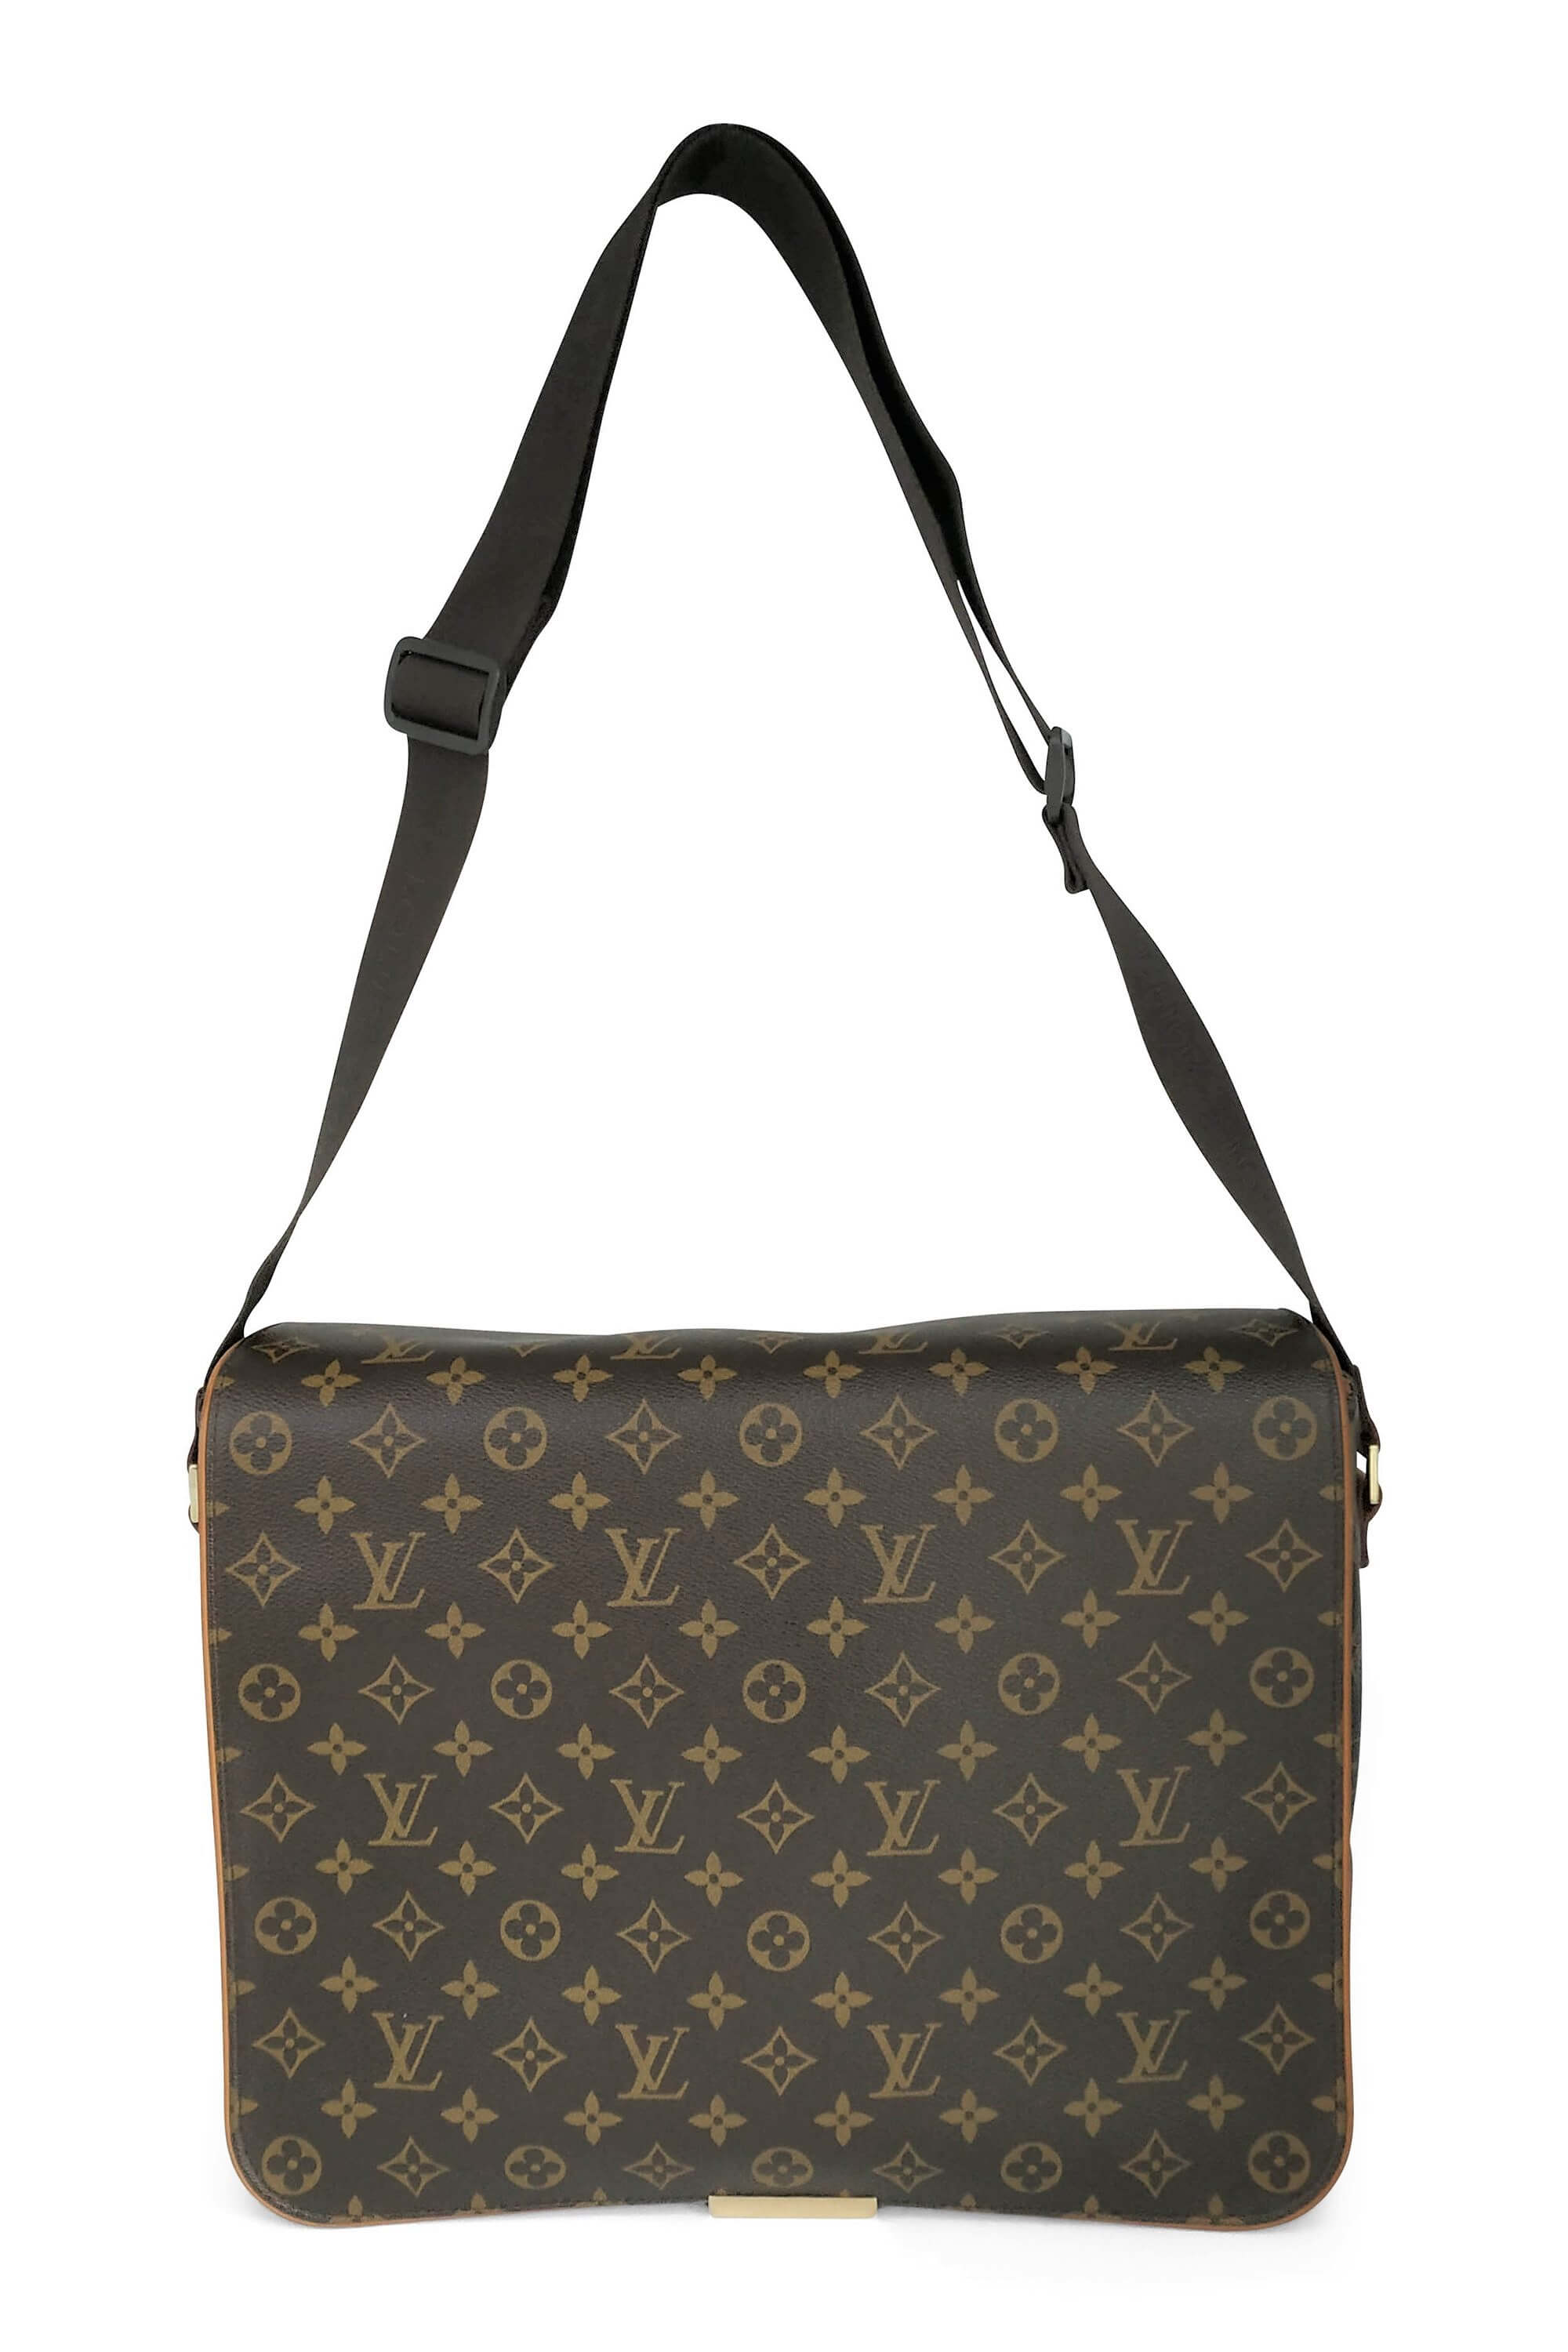 Louis Vuitton Monogram Canvas Abbesses Messenger Bag For Sale at